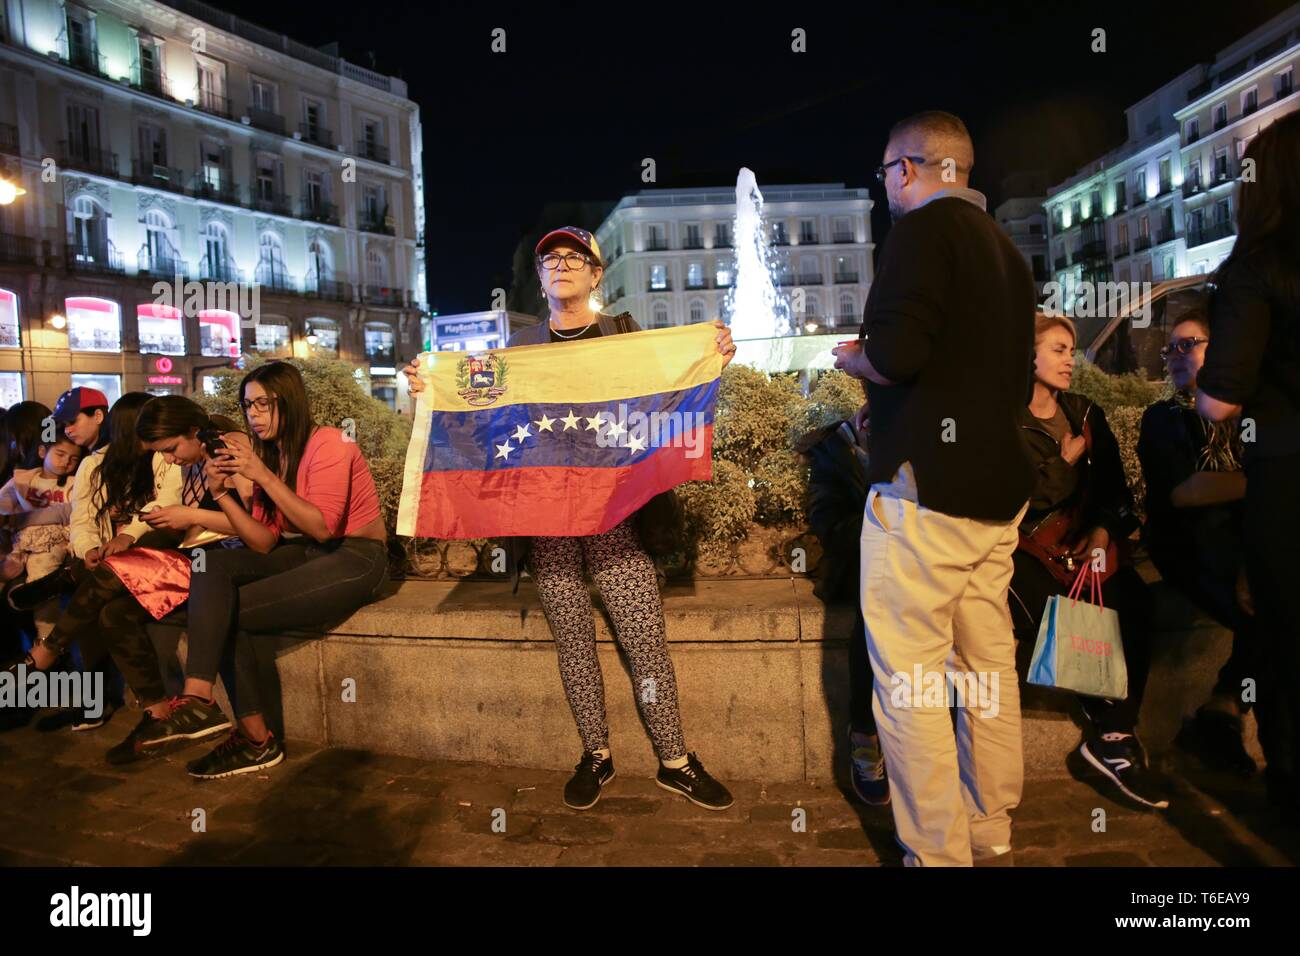 Vu une femme avec un drapeau vénézuélien lors de la manifestation. Des centaines de personnes se sont réunies à la Puerta del Sol, Madrid à une manifestation appelée opération liberté, pour la liberté du Venezuela contre la dictature. Banque D'Images